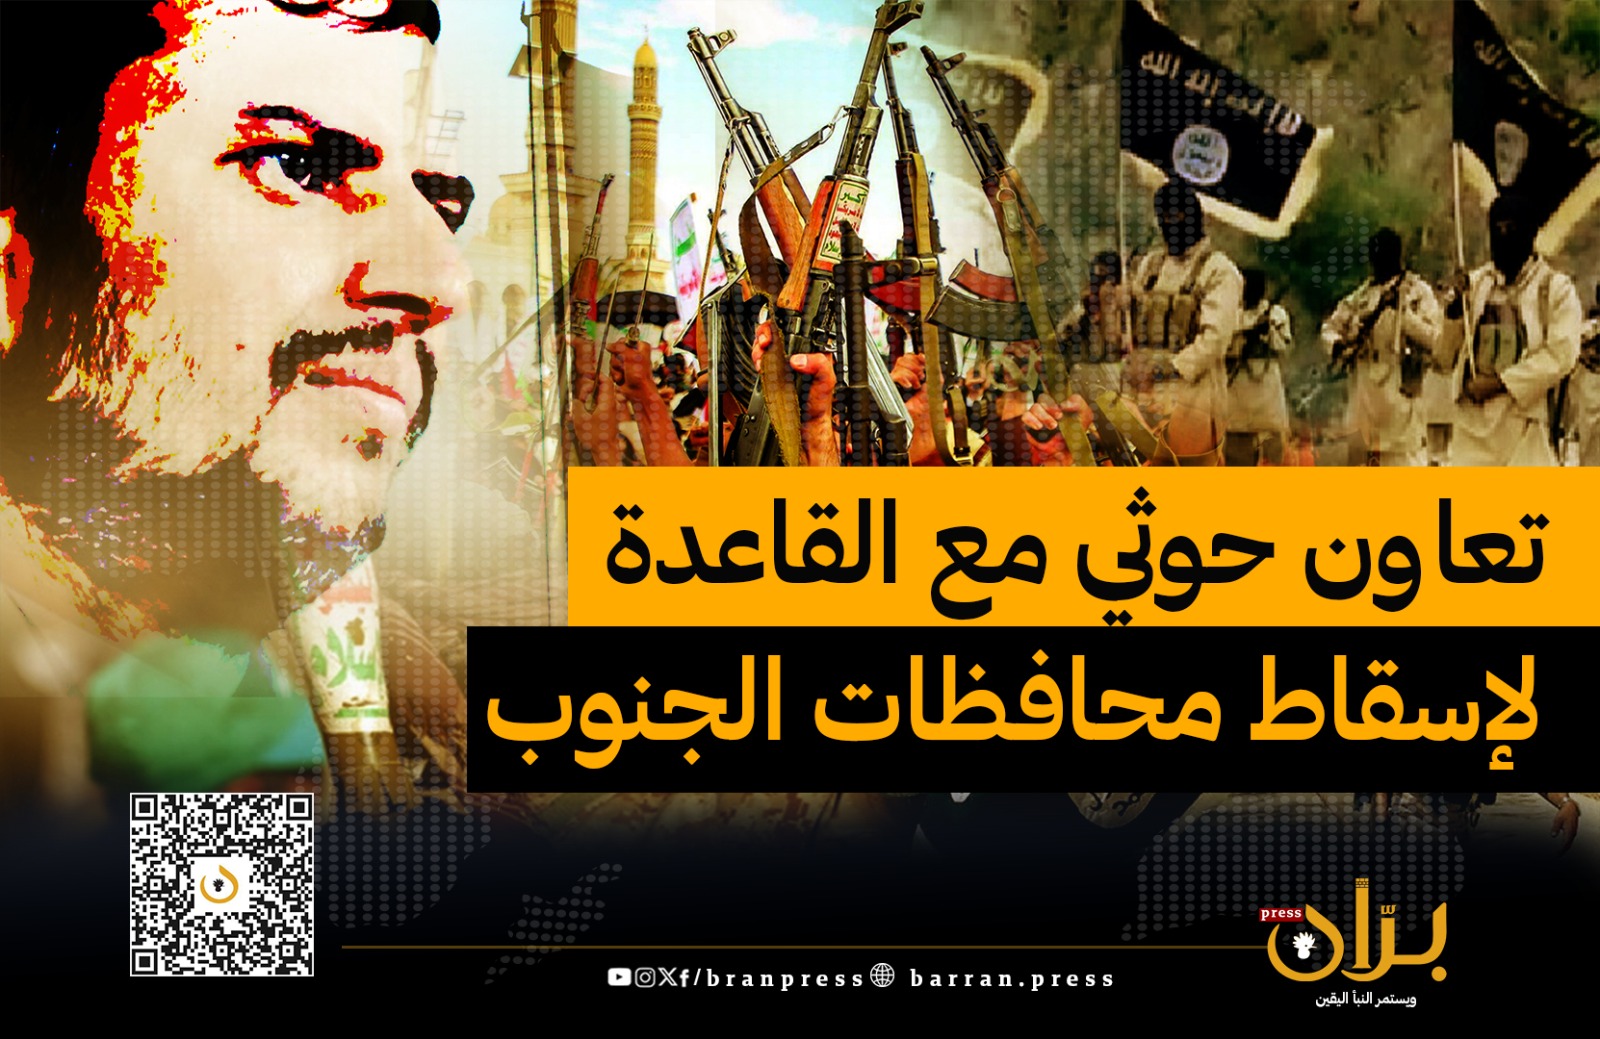 تقرير غربي يتحدث عن أدلة تؤكد “تعاون” الحوثيين مع “تنظيم القاعدة” وتزويدهم بالمسيّرات والصواريخ للسيطرة على محافظات الجنوب